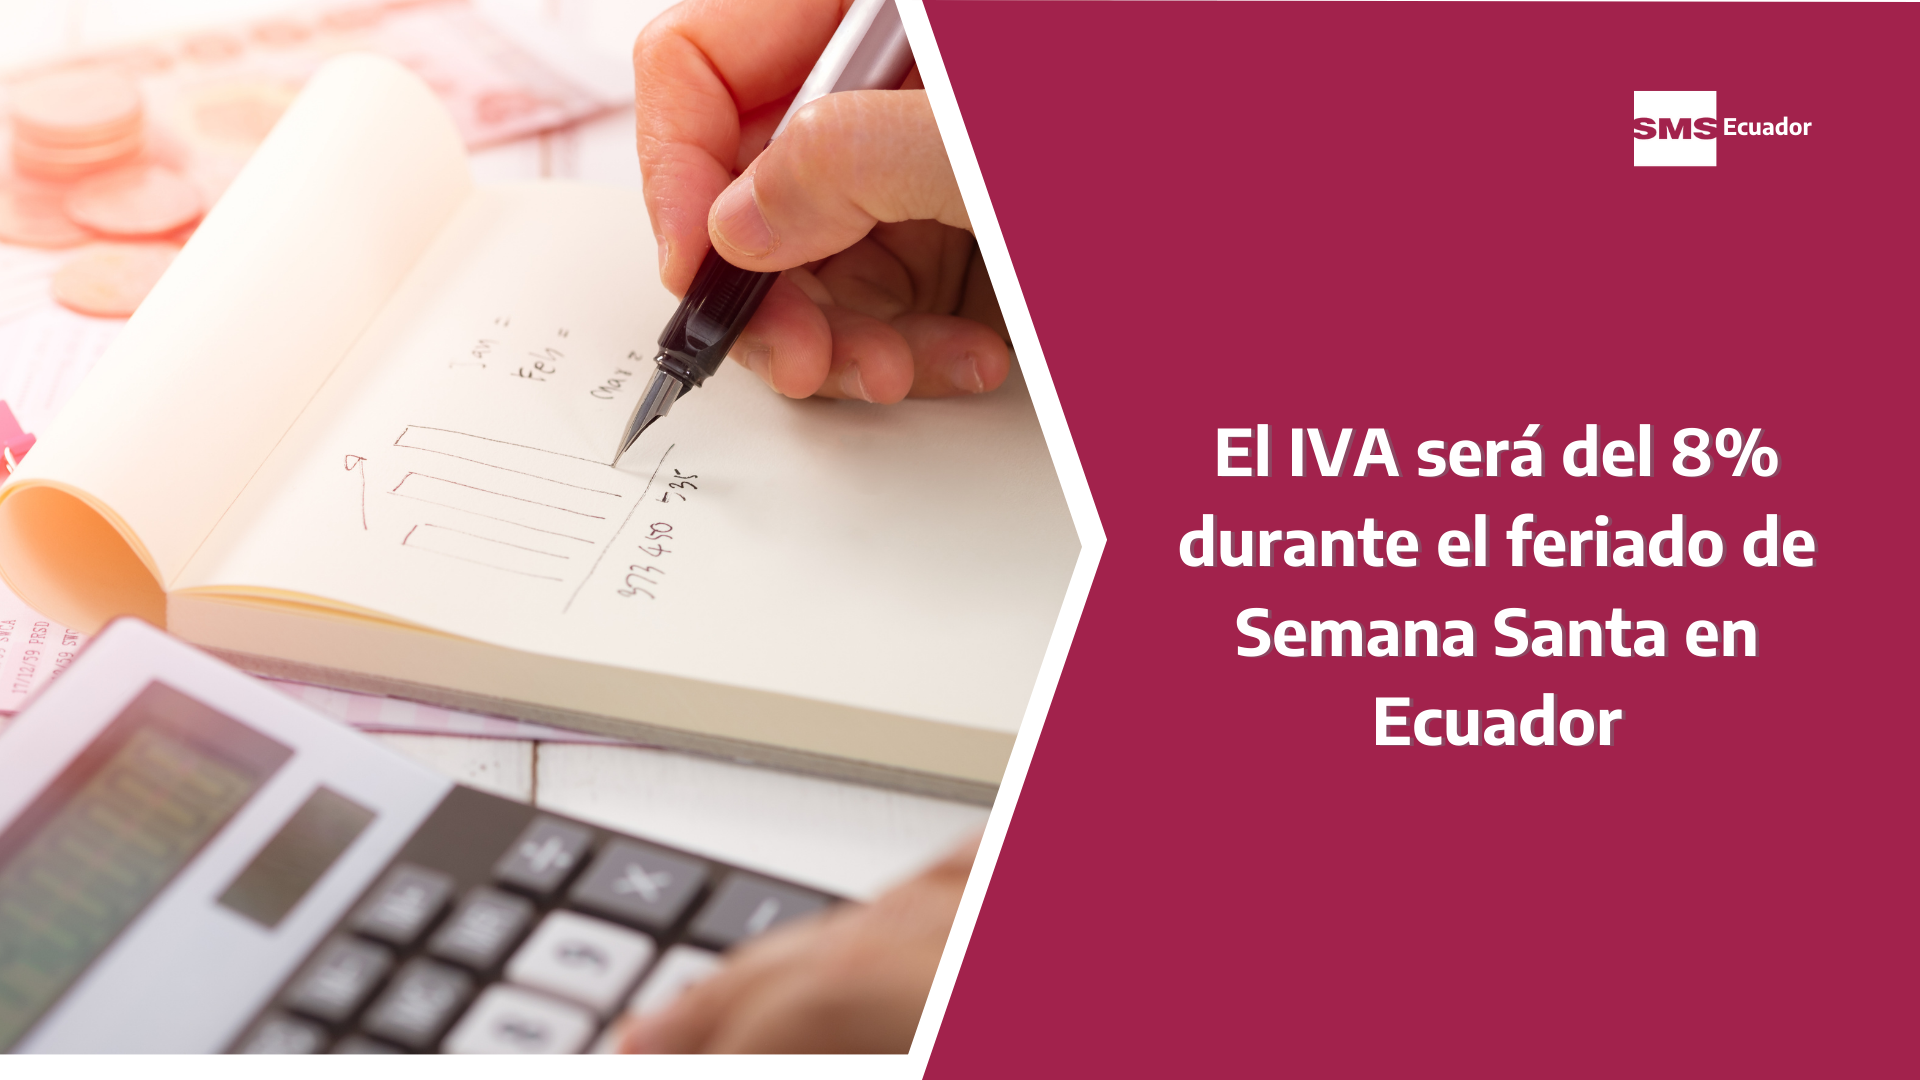 El IVA será del 8 durante el feriado de Semana Santa en Ecuador SMS